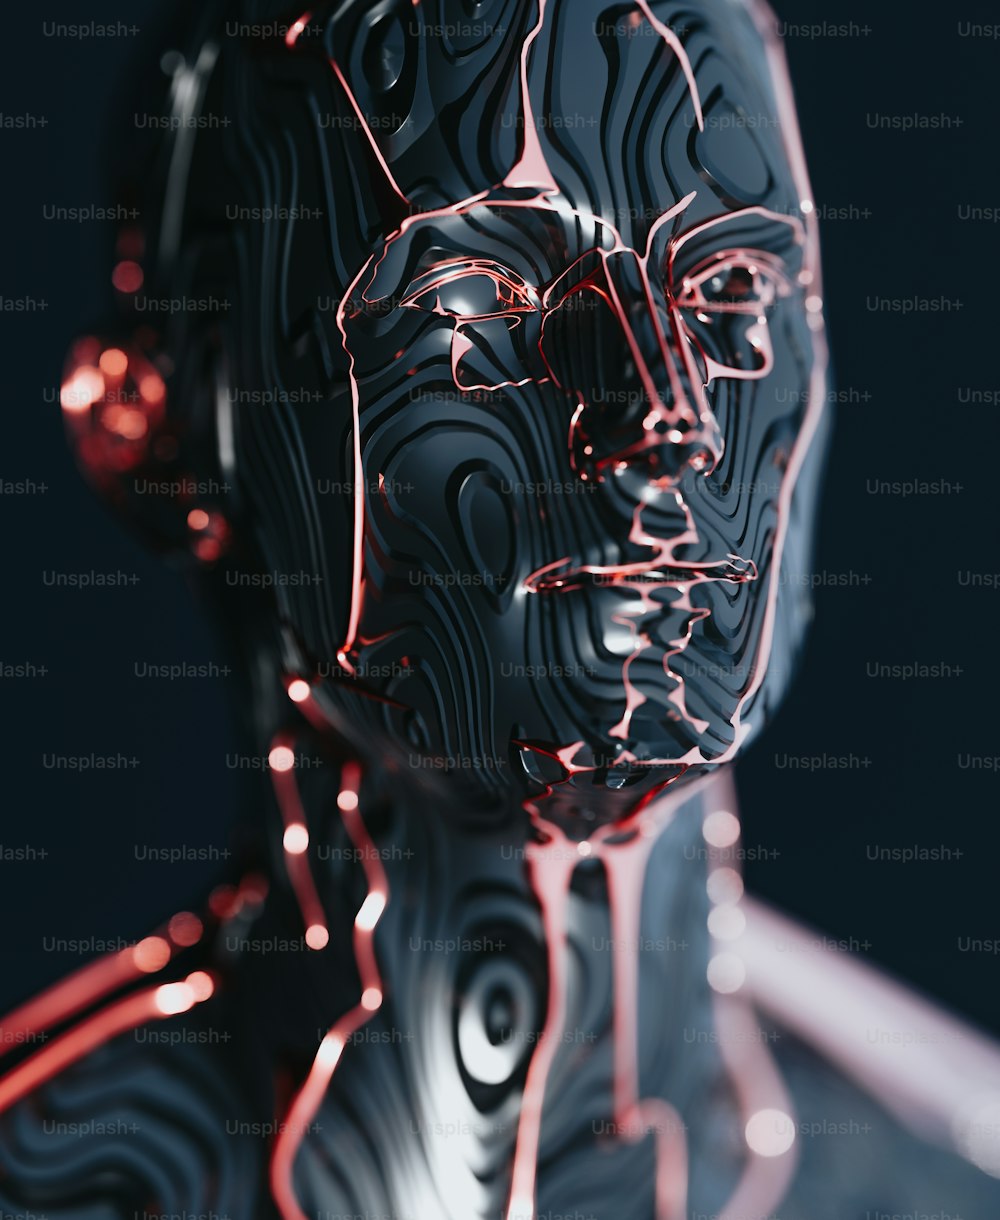 Ein 3D-Bild des Gesichts und des Körpers eines Mannes